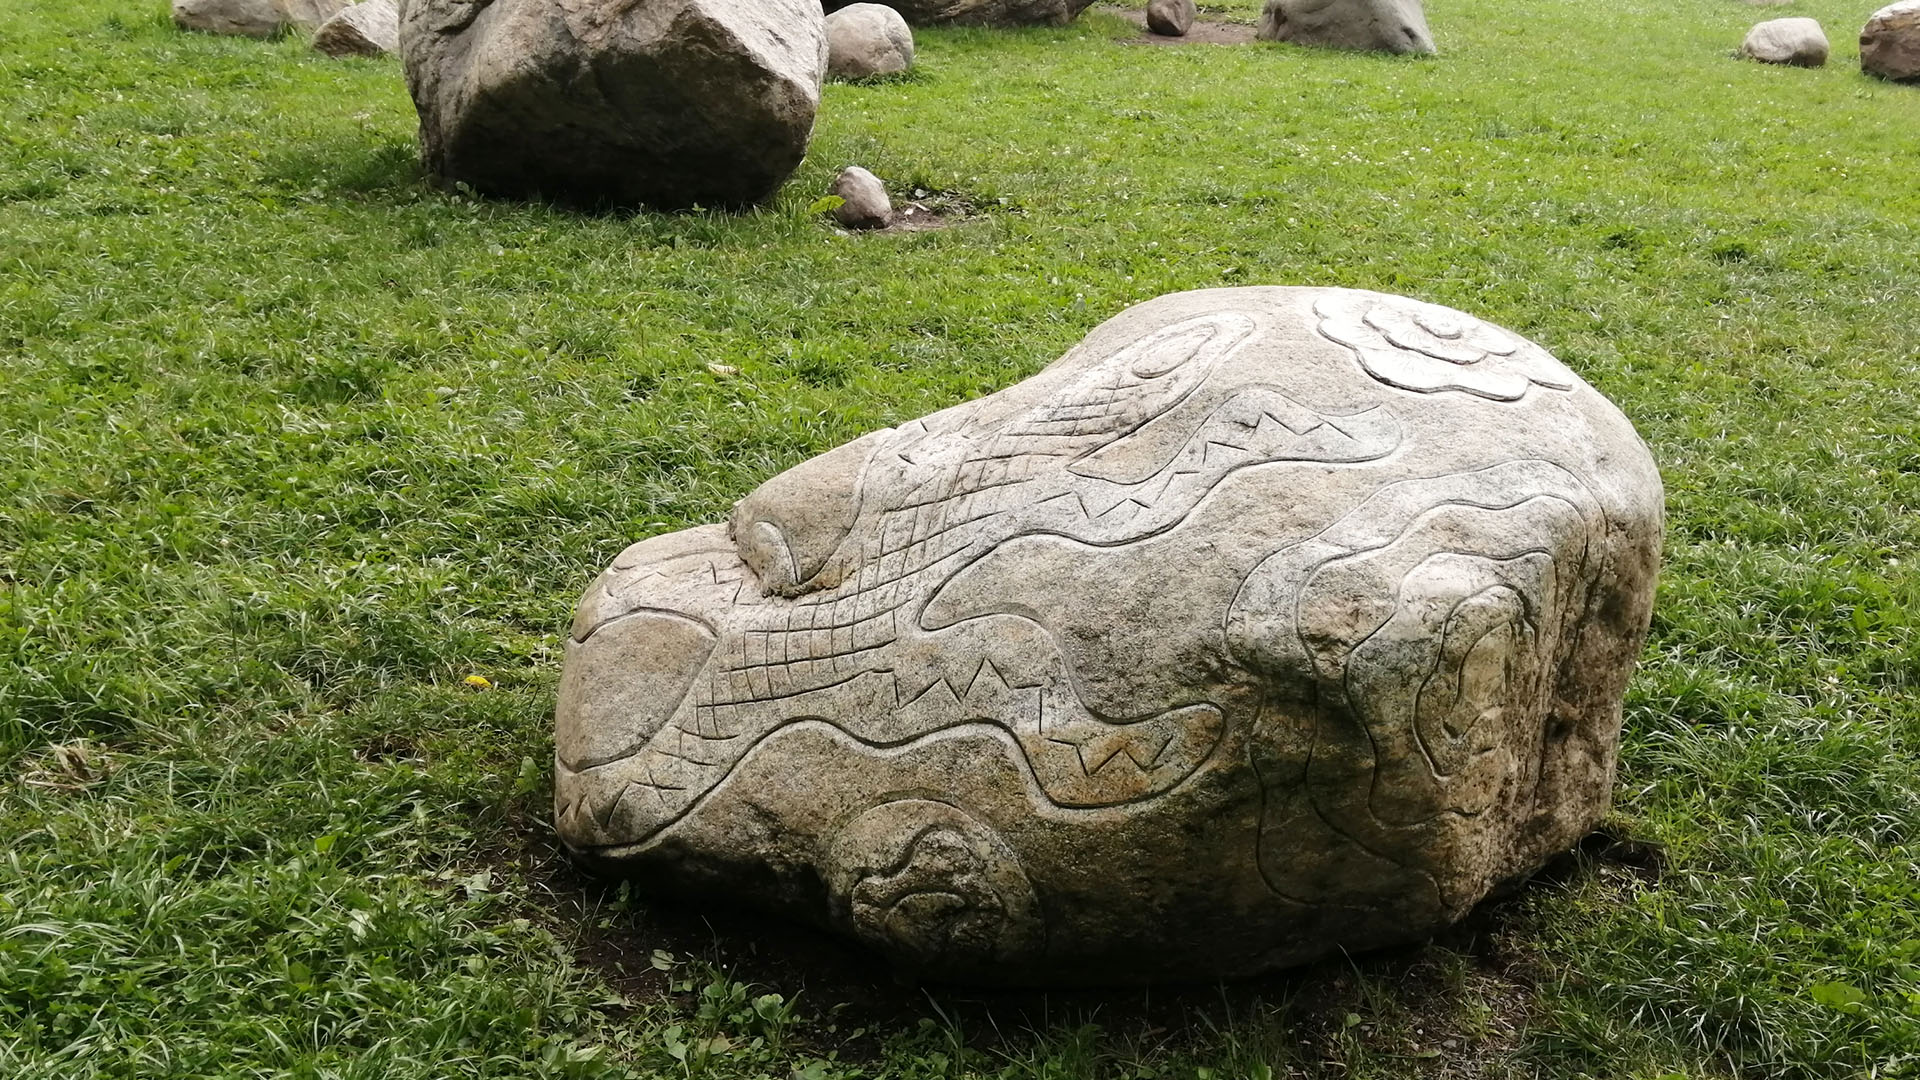 Камень с узором в виде ящерицы.